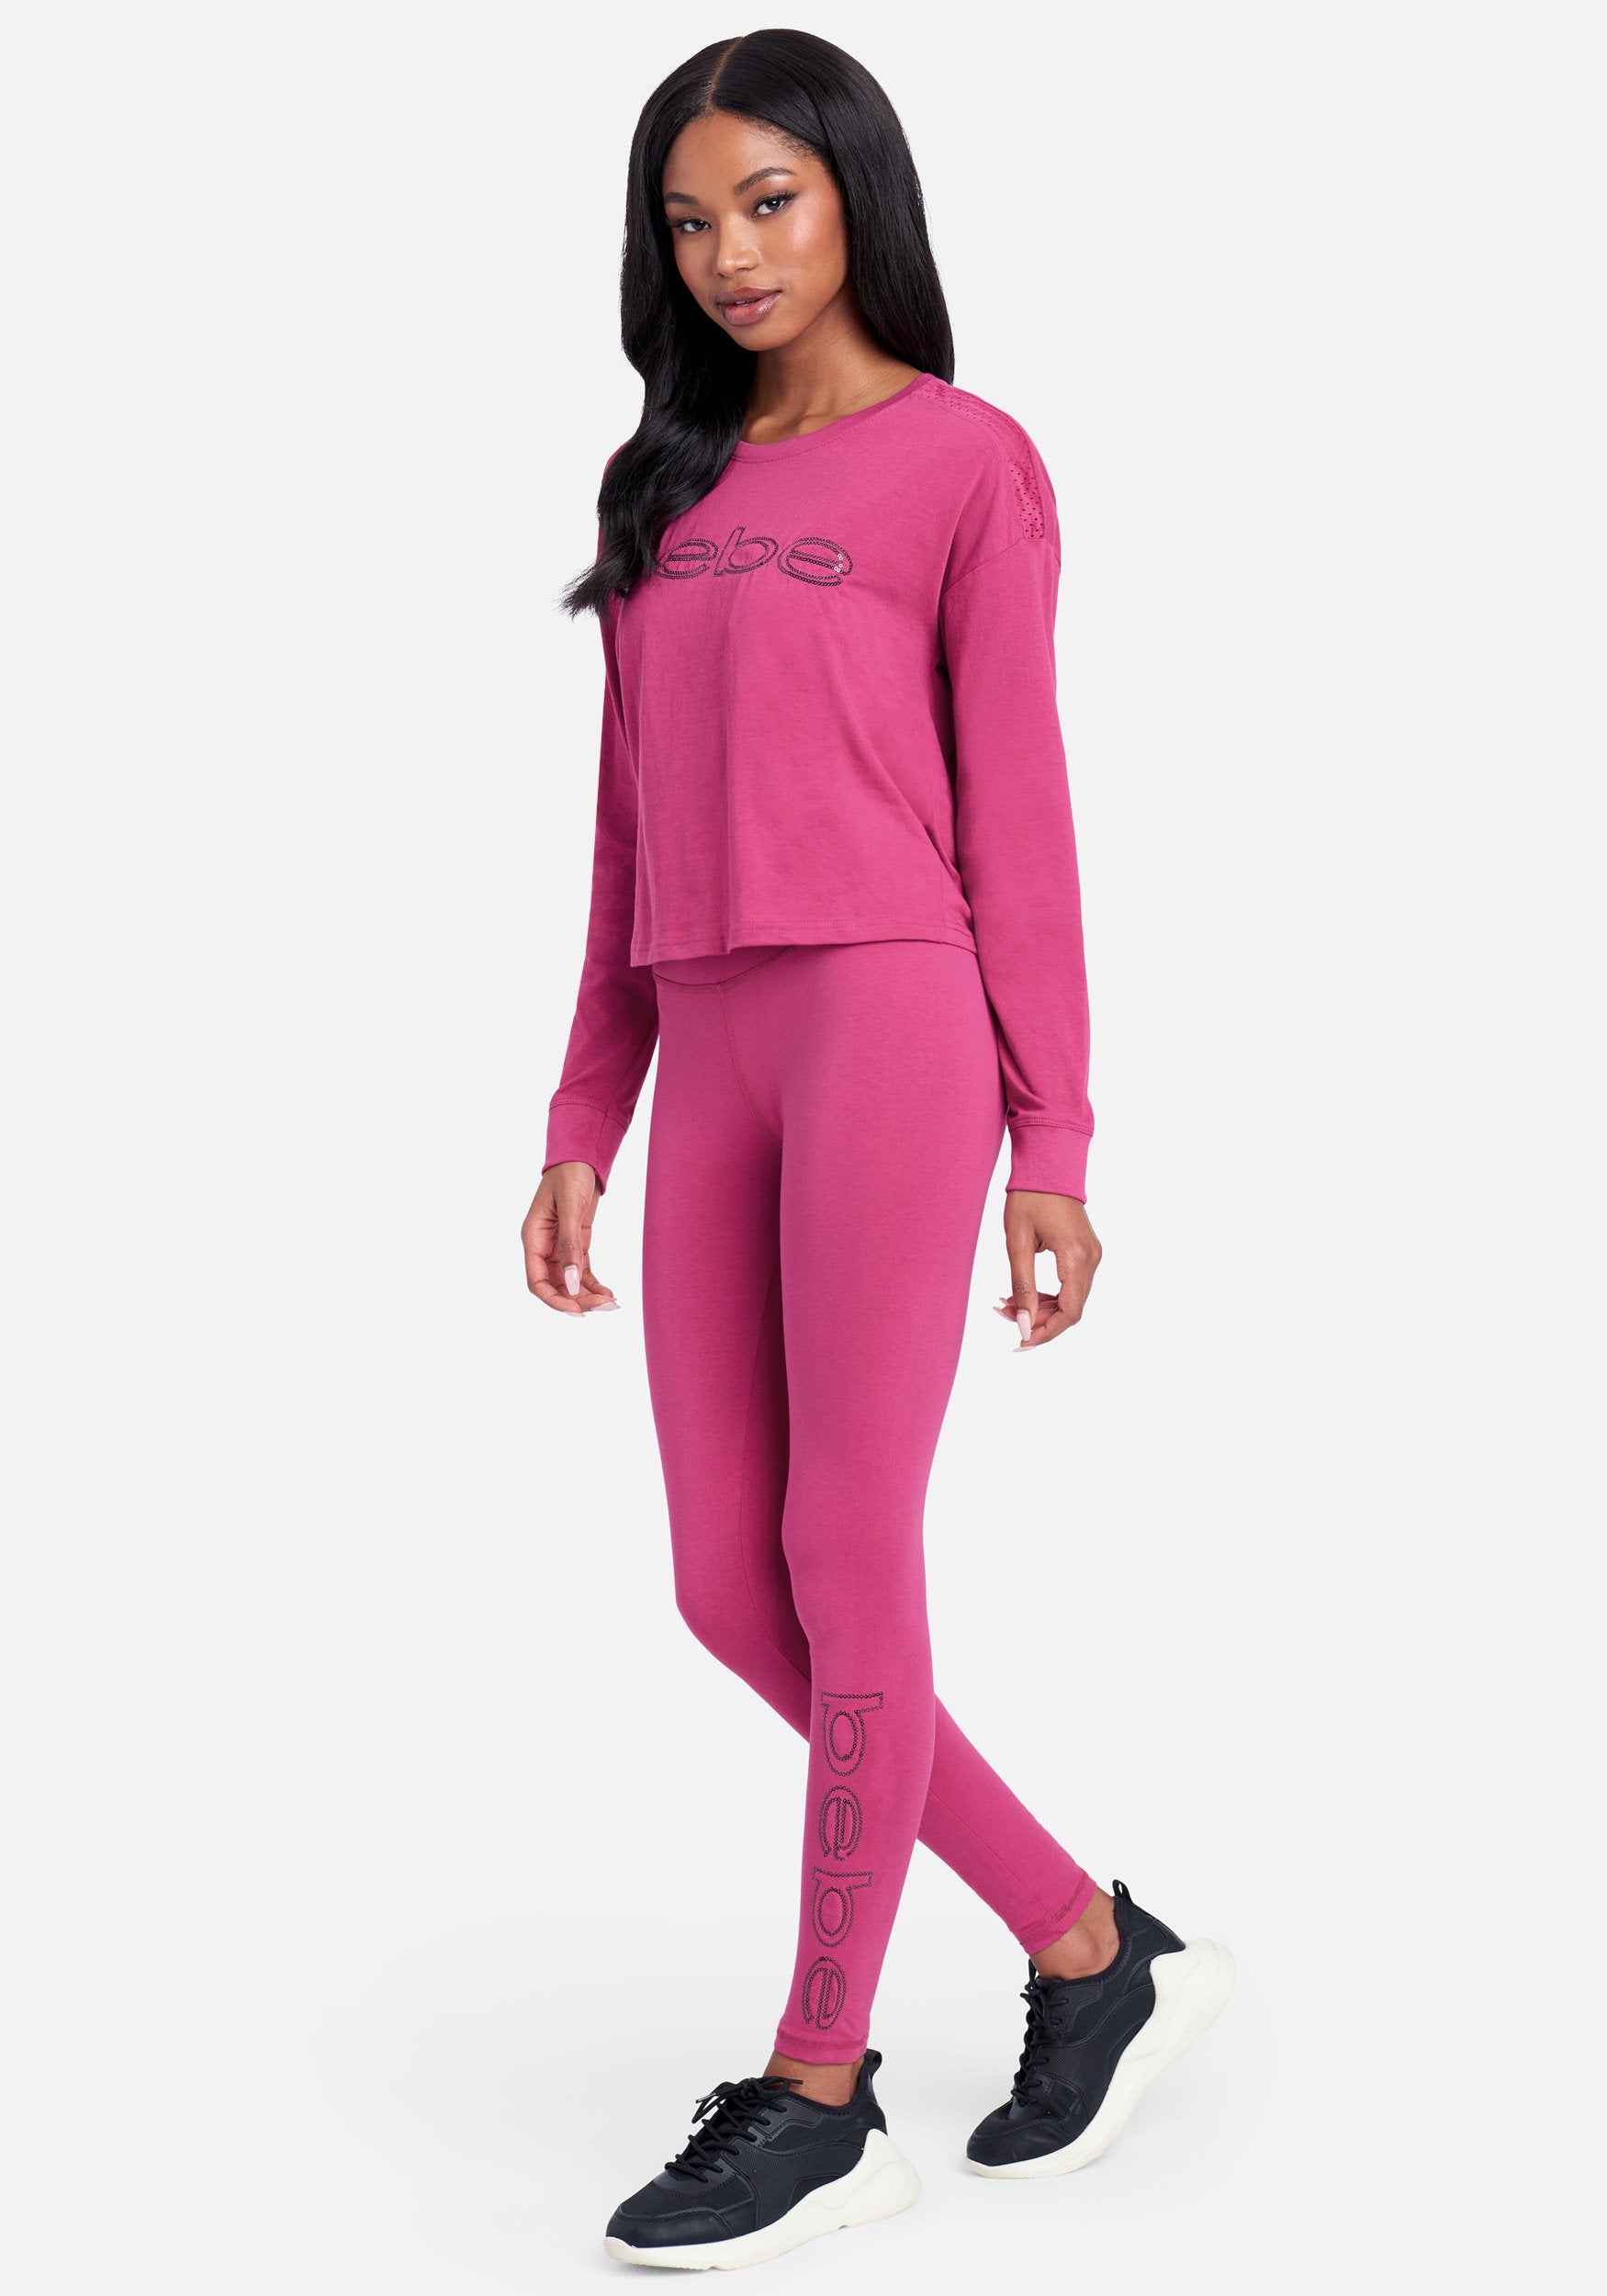 Barbie - Tie Dye Logo - Women's French Terry Jogger Pant 